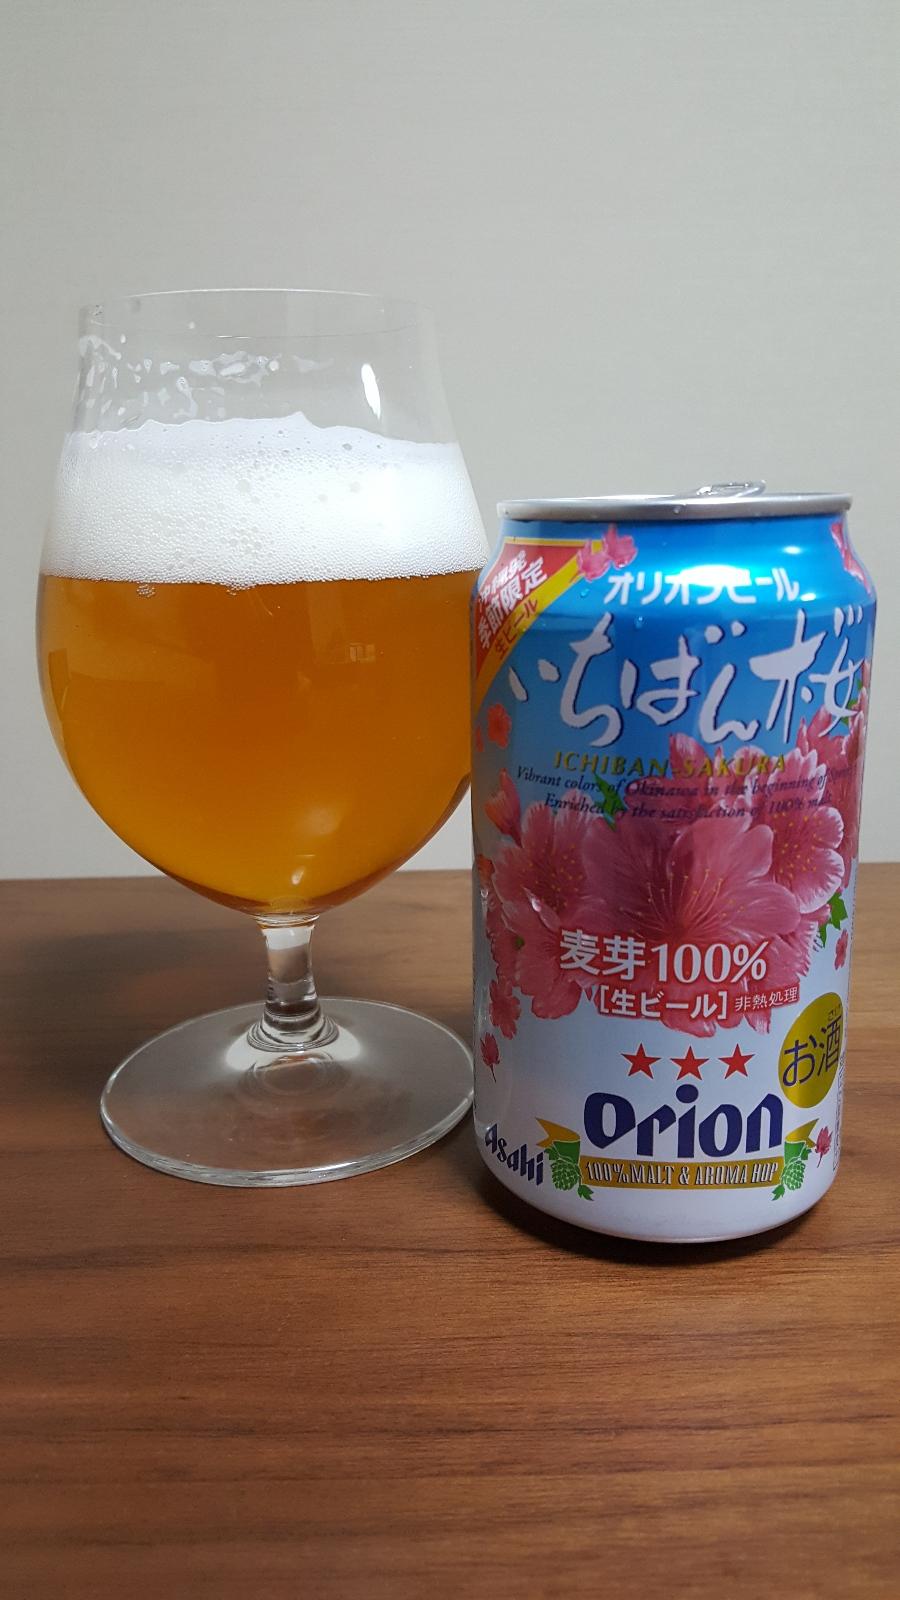 Orion Ichiban Sakura (2019)